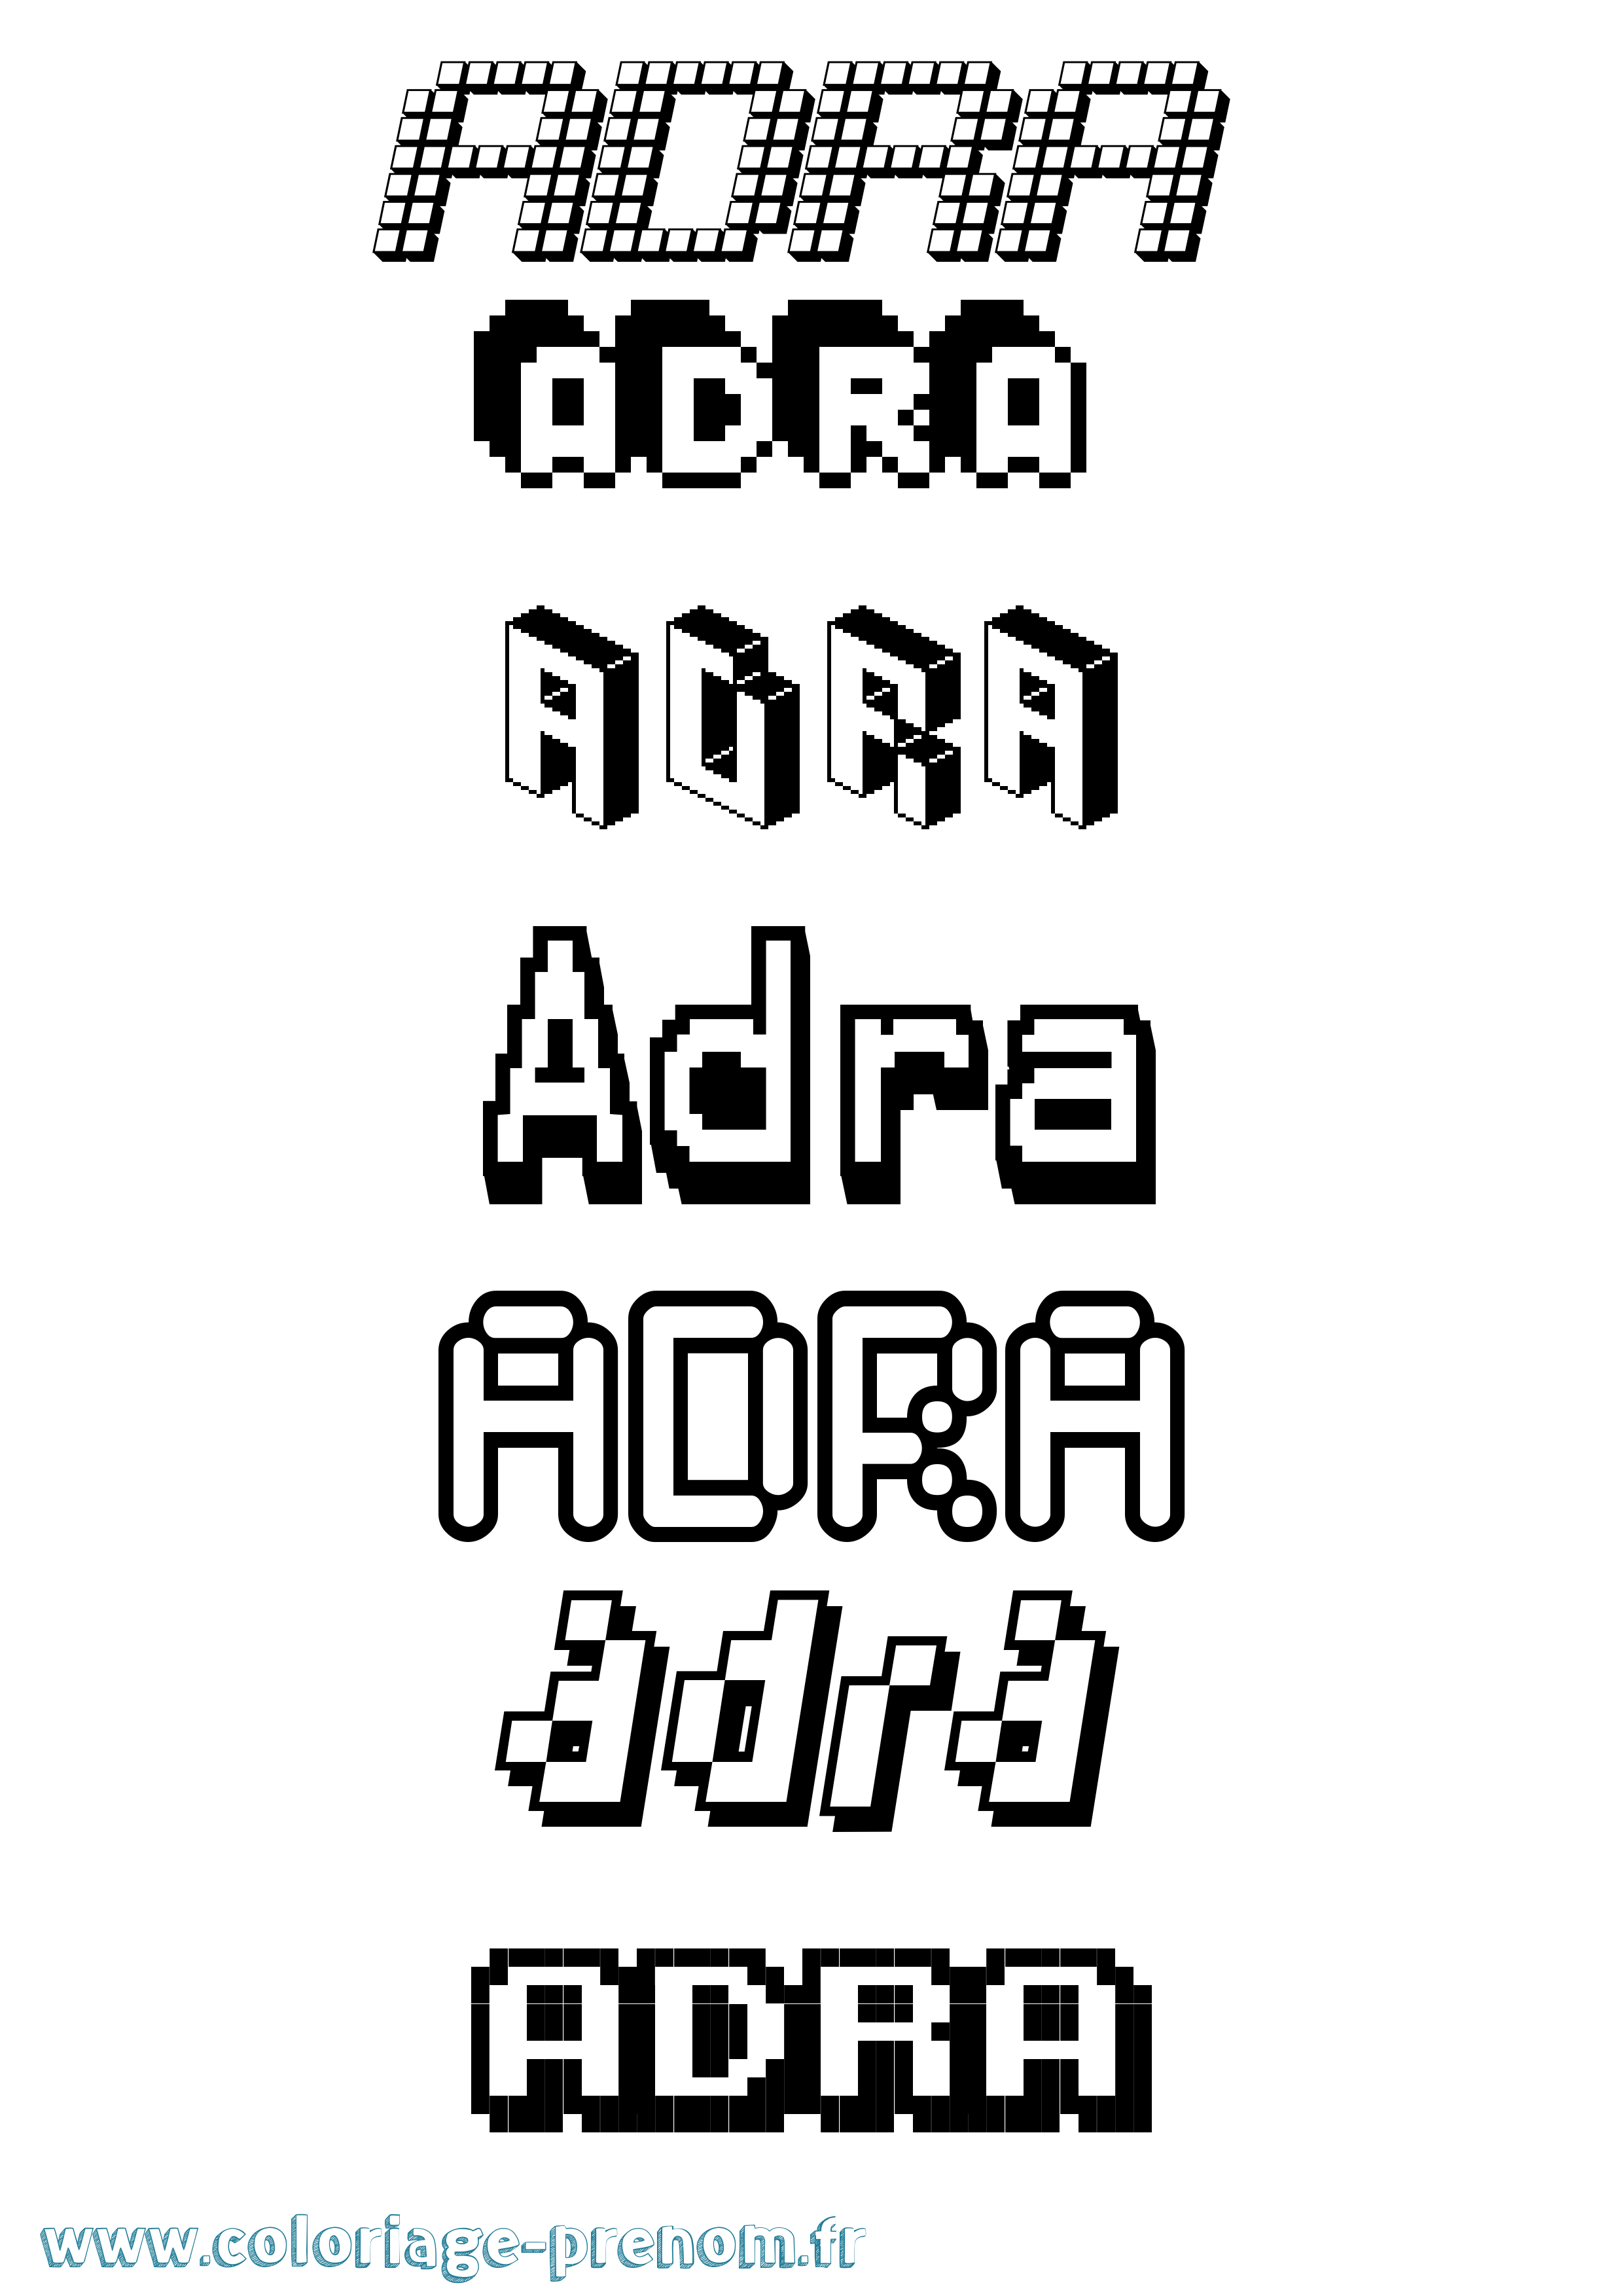 Coloriage prénom Adra Pixel